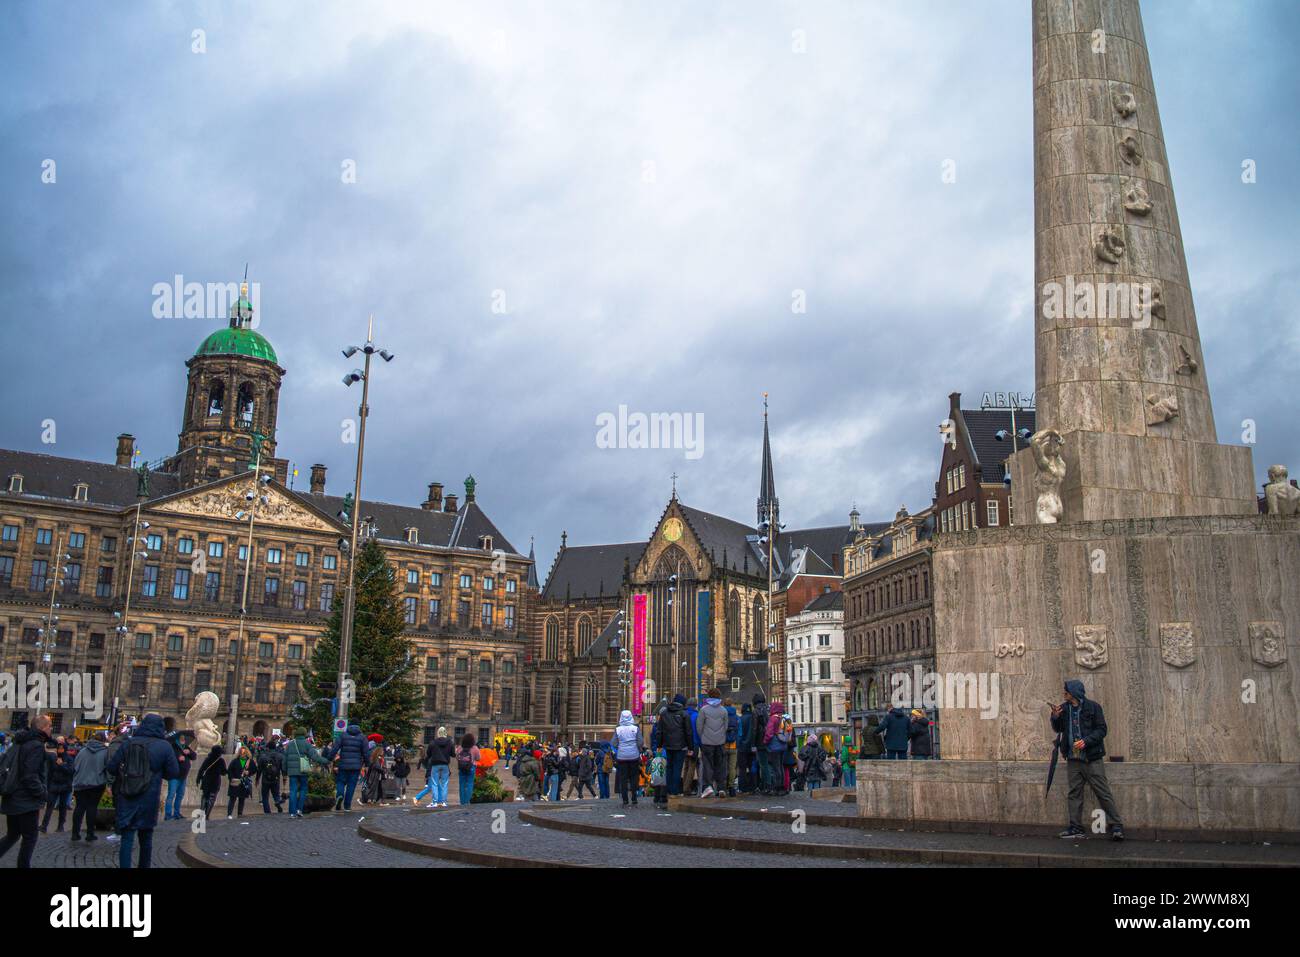 Piazza del Duomo di Amsterdam racchiude fascino storico e bellezza architettonica, con il suo iconico edificio a cupola e l'atmosfera vivace. Foto Stock